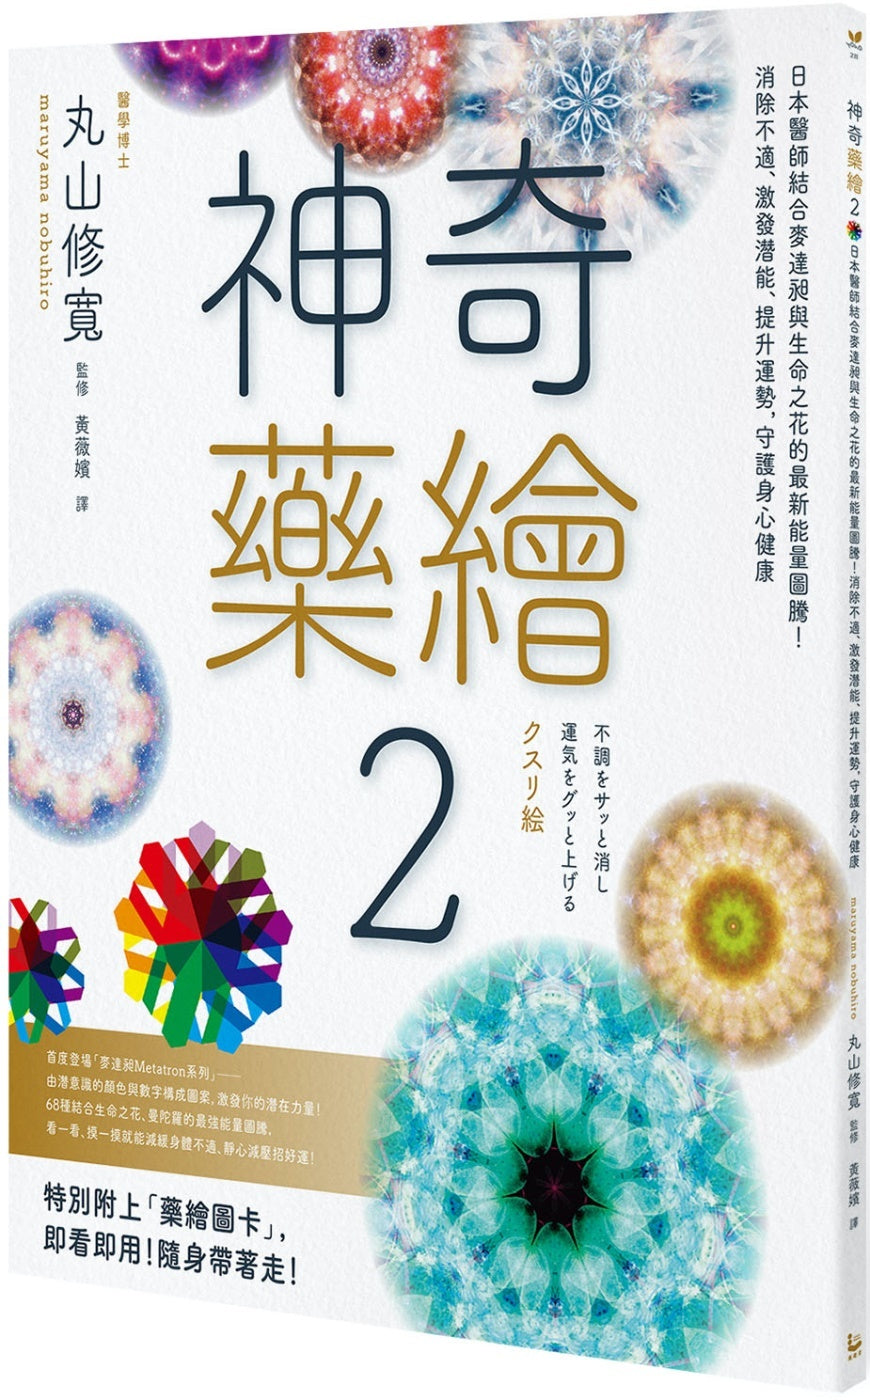 【漫遊者文化】神奇藥繪(2)：日本醫師結合生命之花、曼陀羅等神聖幾何圖形，運用圖騰能量，啟動身體自癒力，靜心減壓招好運